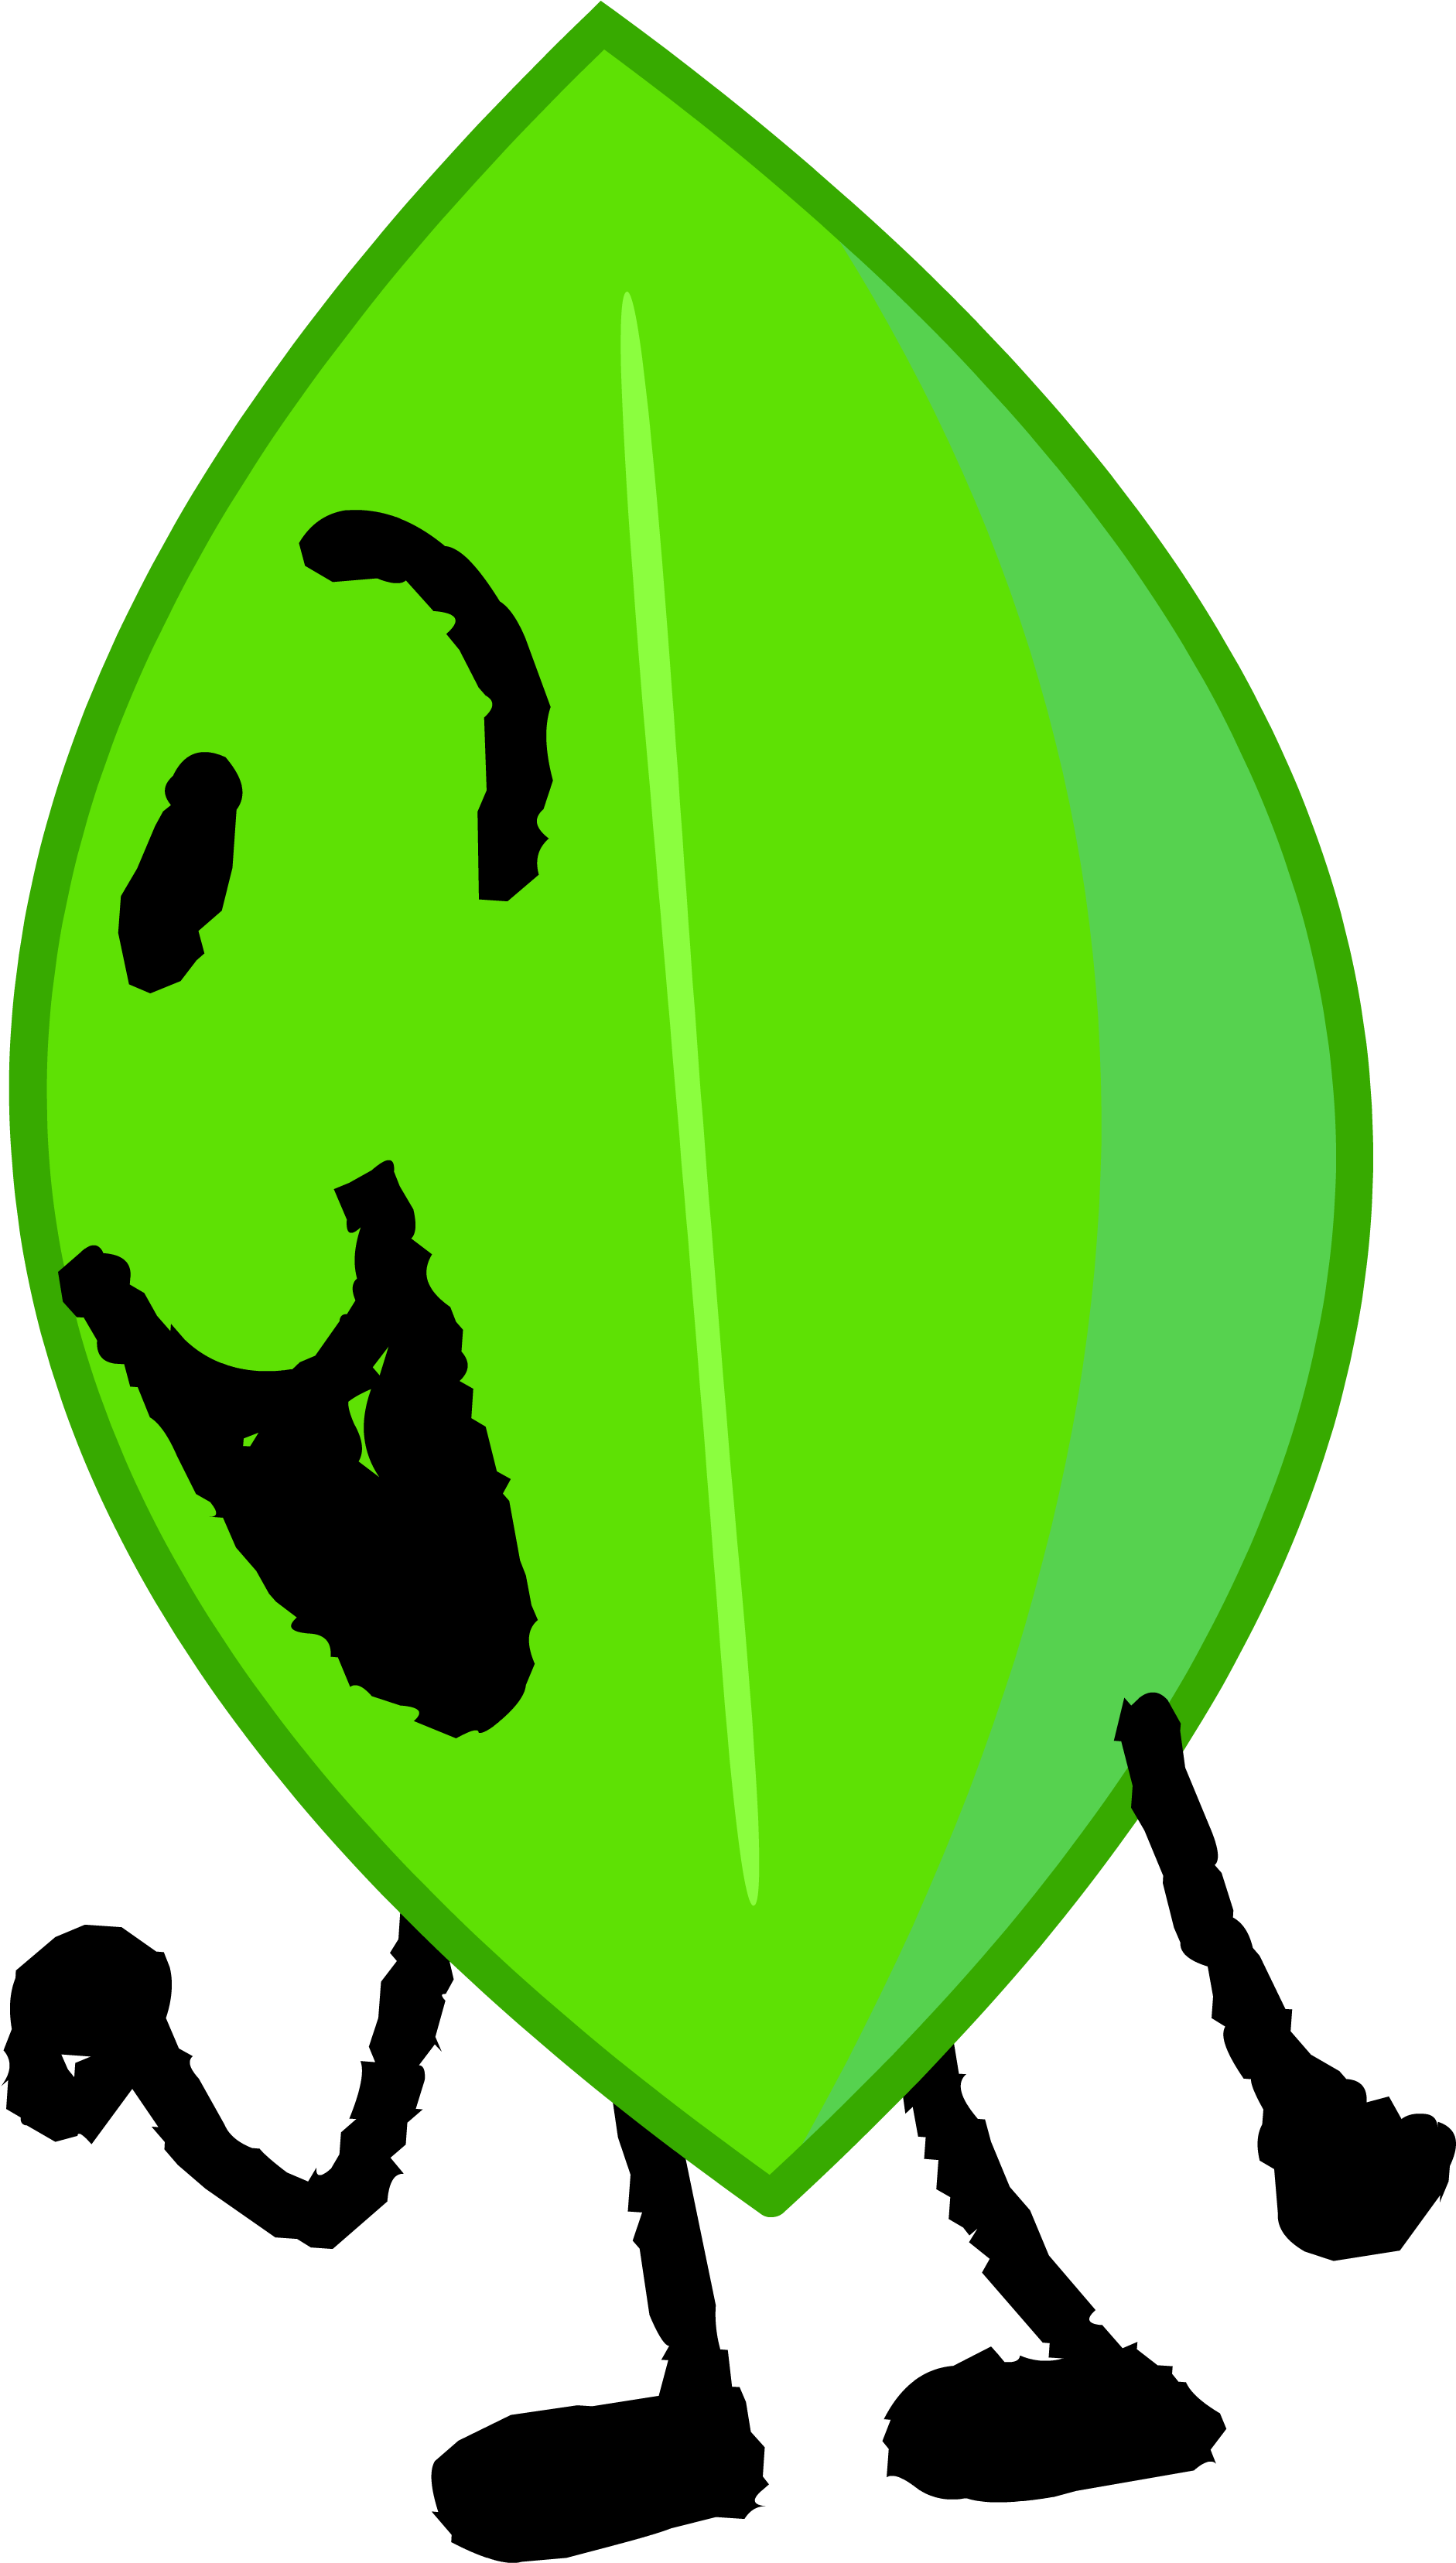 A Green Balloon With A Face